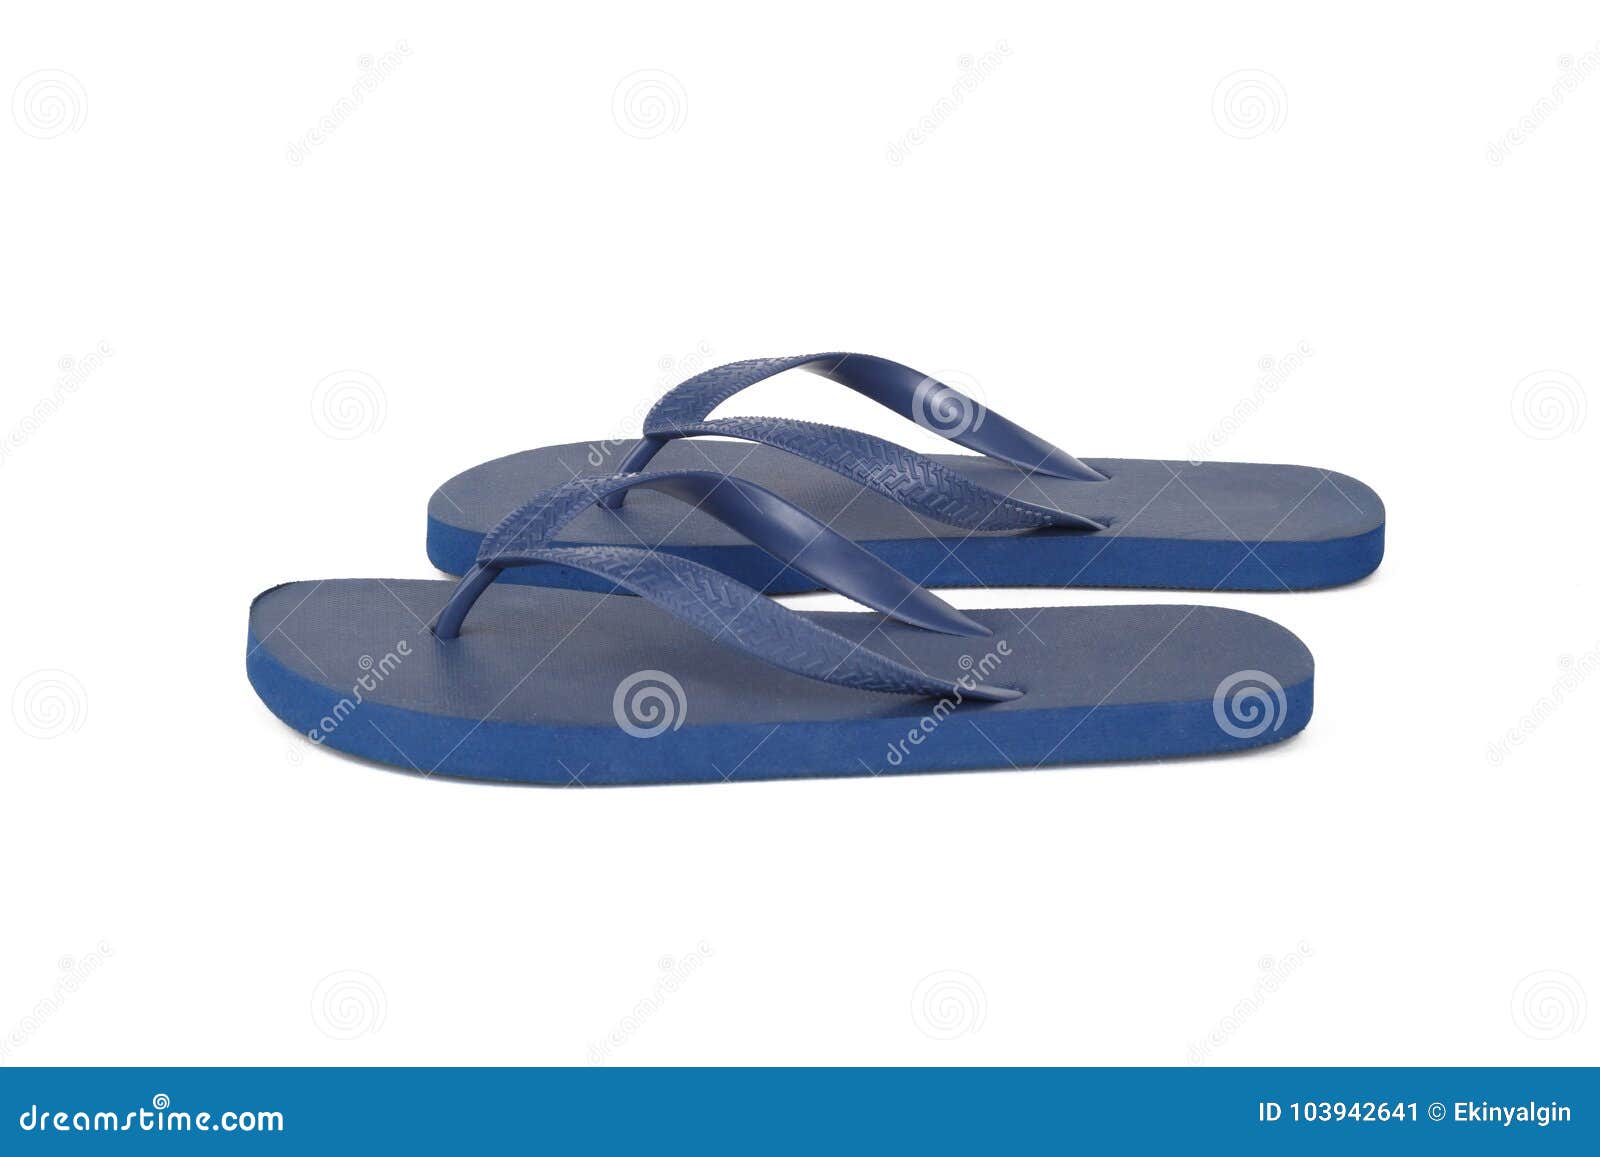 Plastic Blue Flip Flops Slippers On White Stock Image